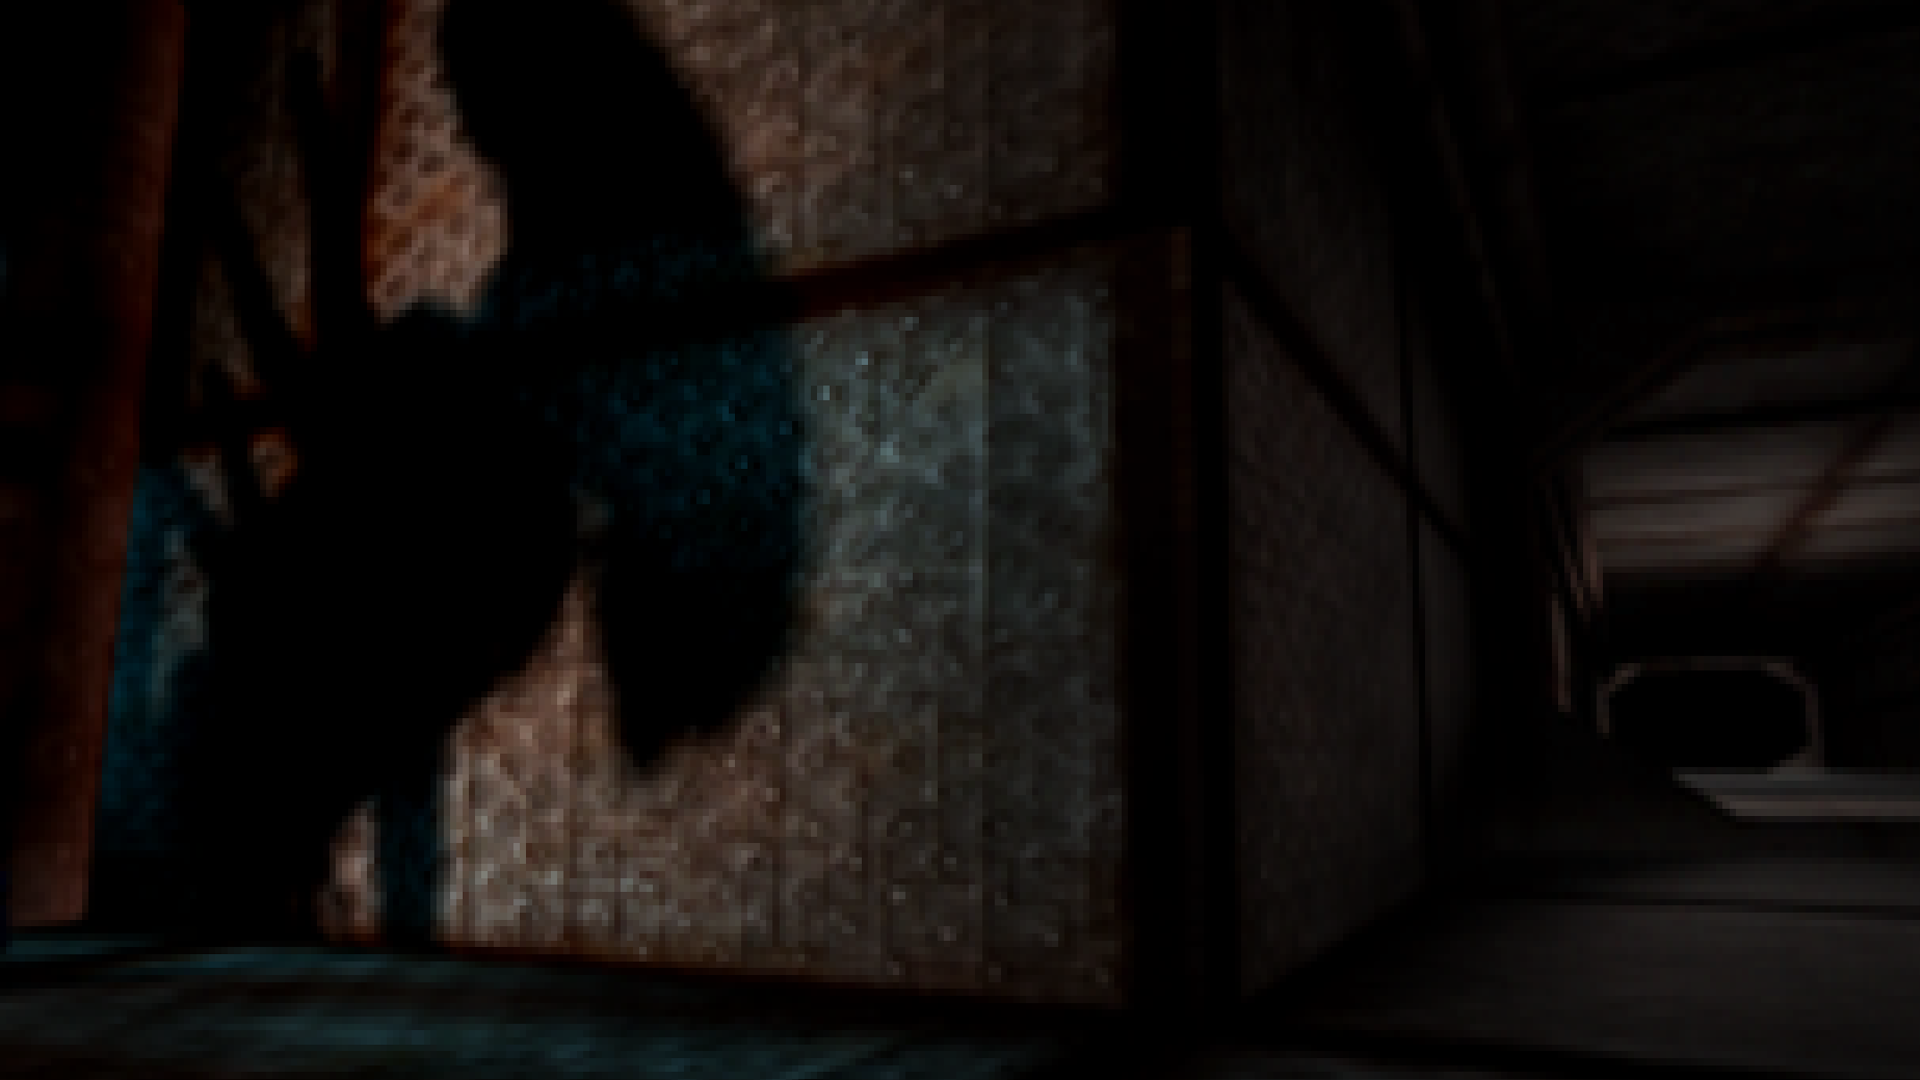 An alien shadow stalks the halls of a derelict spaceship